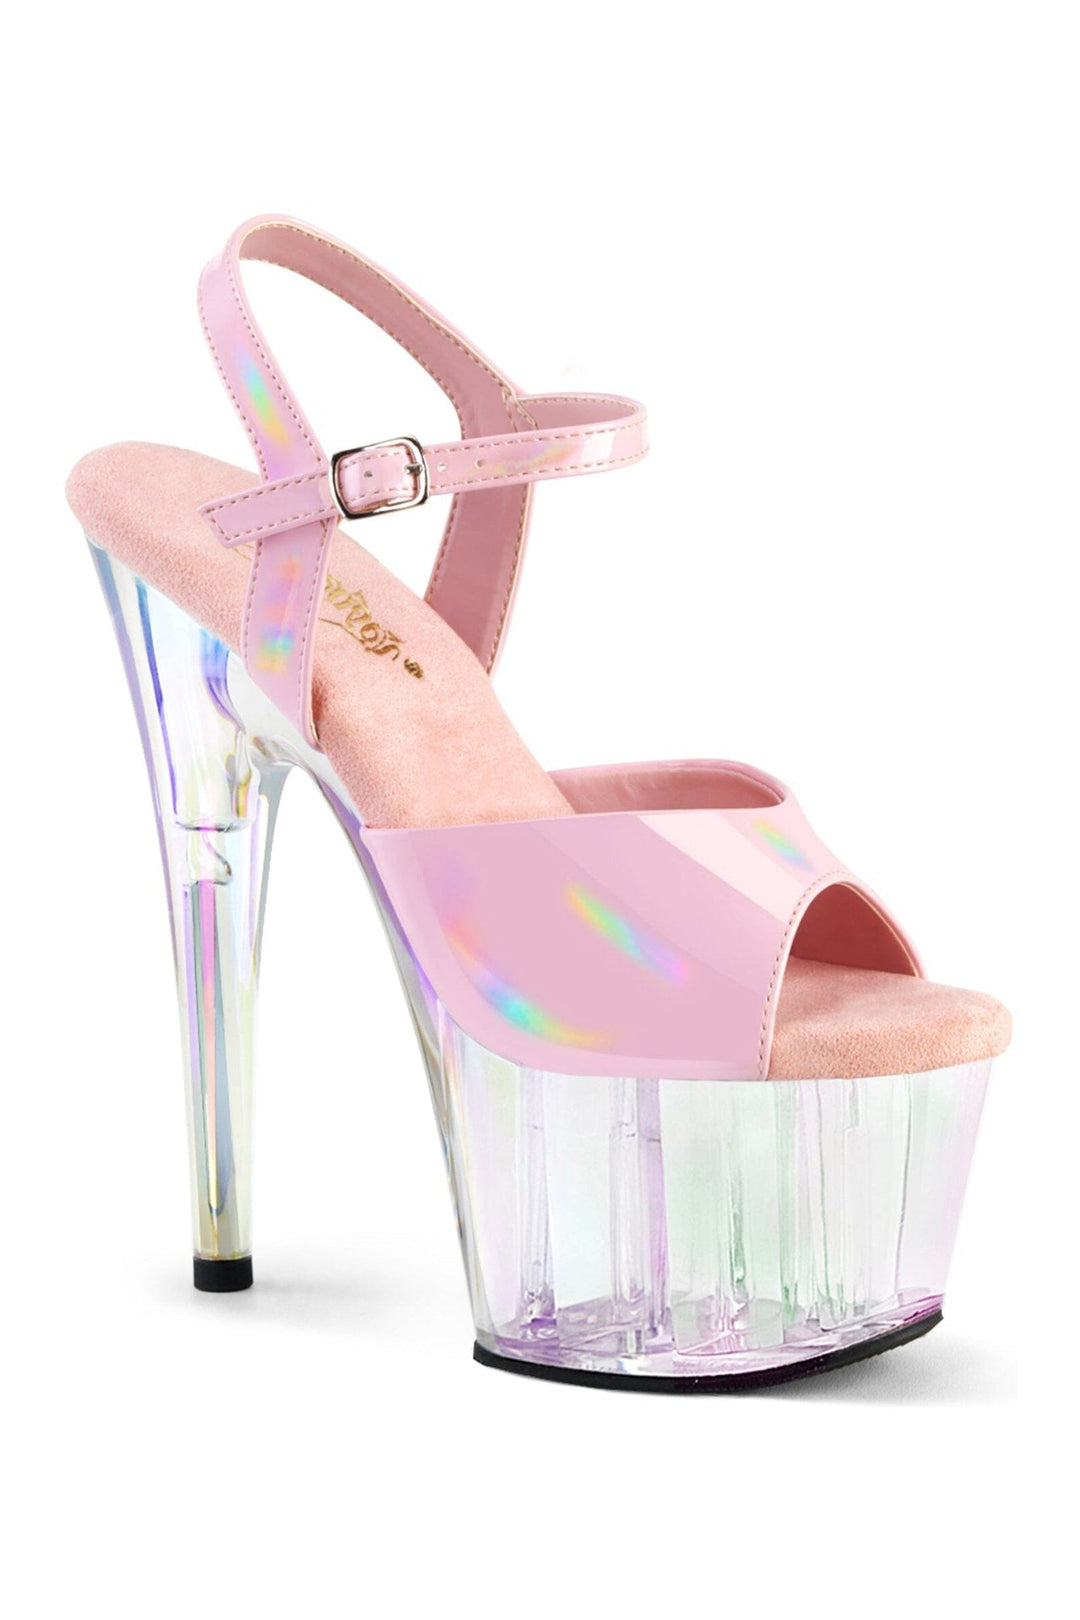 ADORE-709HT Pink Hologram Sandal-Sandals-Pleaser-Pink-10-Hologram-SEXYSHOES.COM